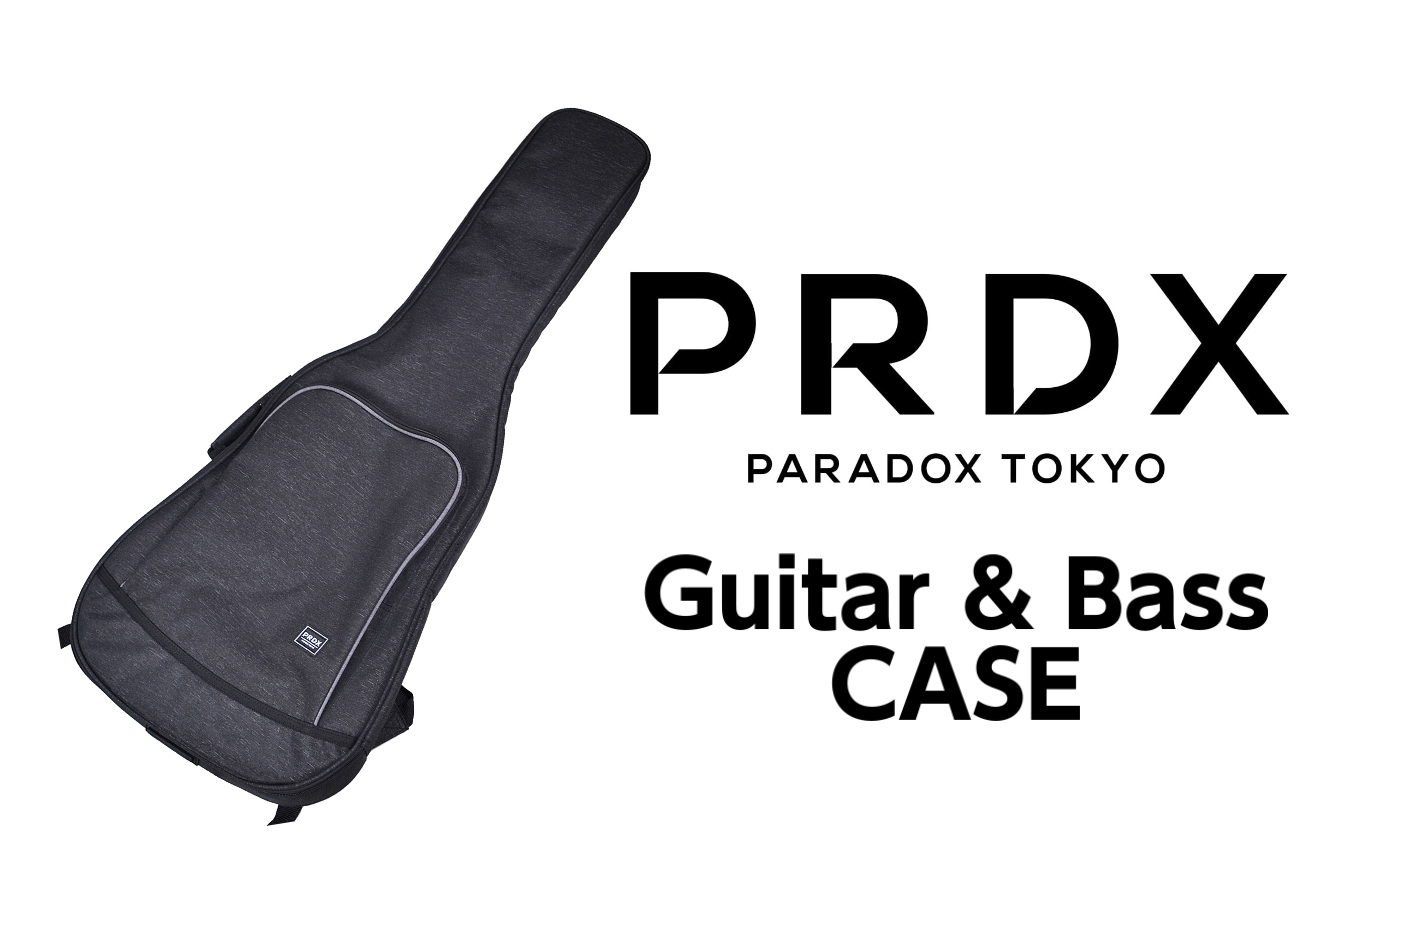 *PRDX‐PARADOX TOKYOギター・ベース用ケース入荷！！ 若い世代から支持を得ている多くのアーティストから熱い視線を送られているアパレルブランド PRDX -PARADOX TOKYO-よりギター・ベースケースが入荷してきました！ ミュージックカルチャーとファッションカルチャーを見事の融 […]